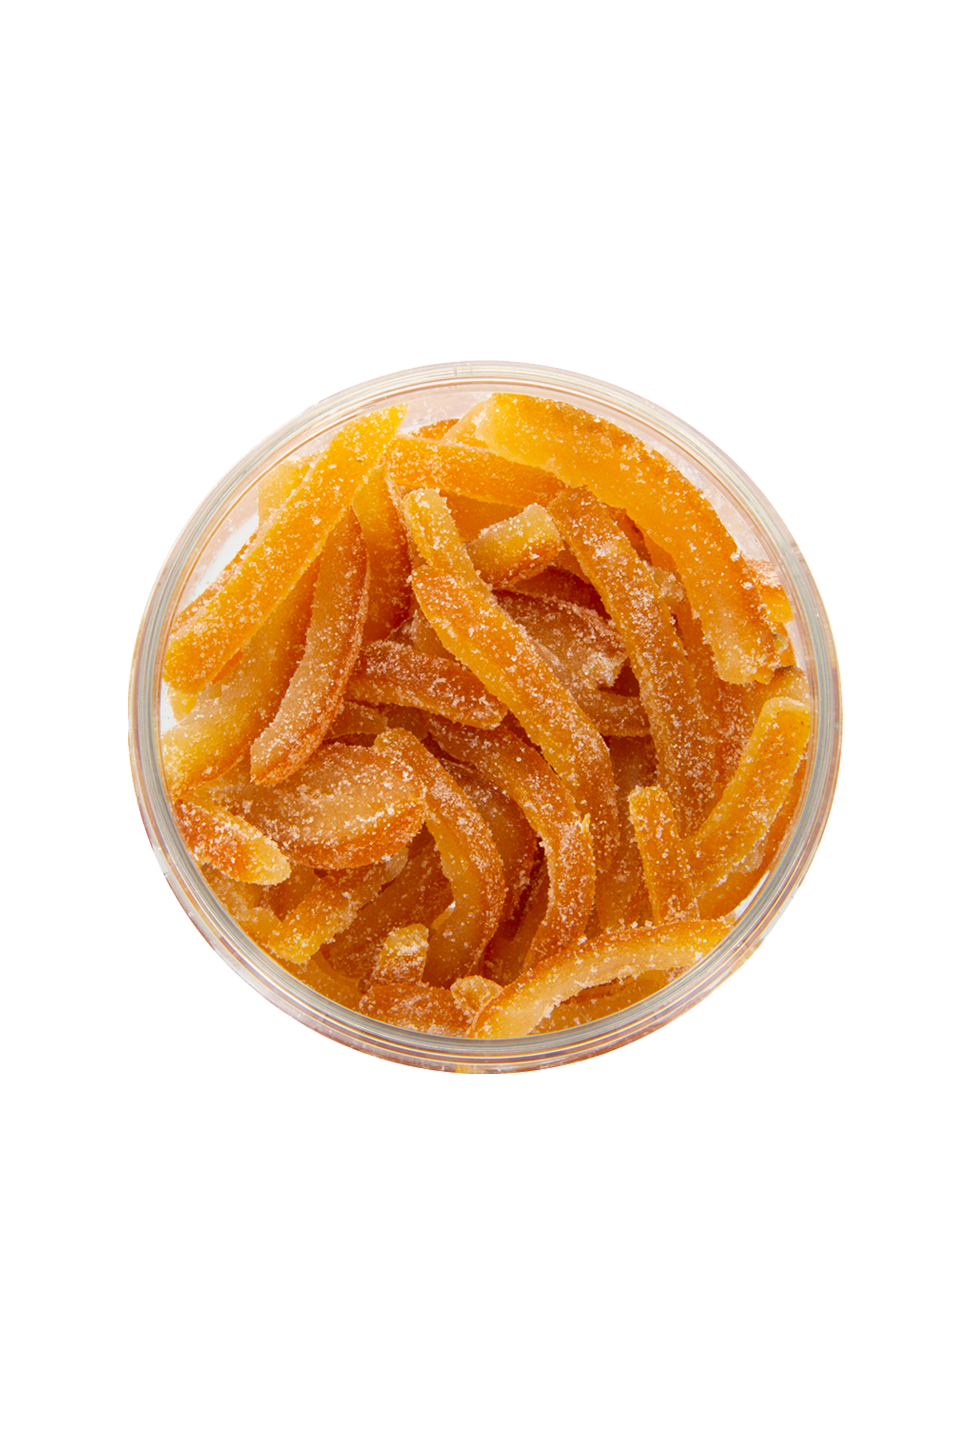 orangette au sucre box pâtisserie 200g - Confiserie Florian